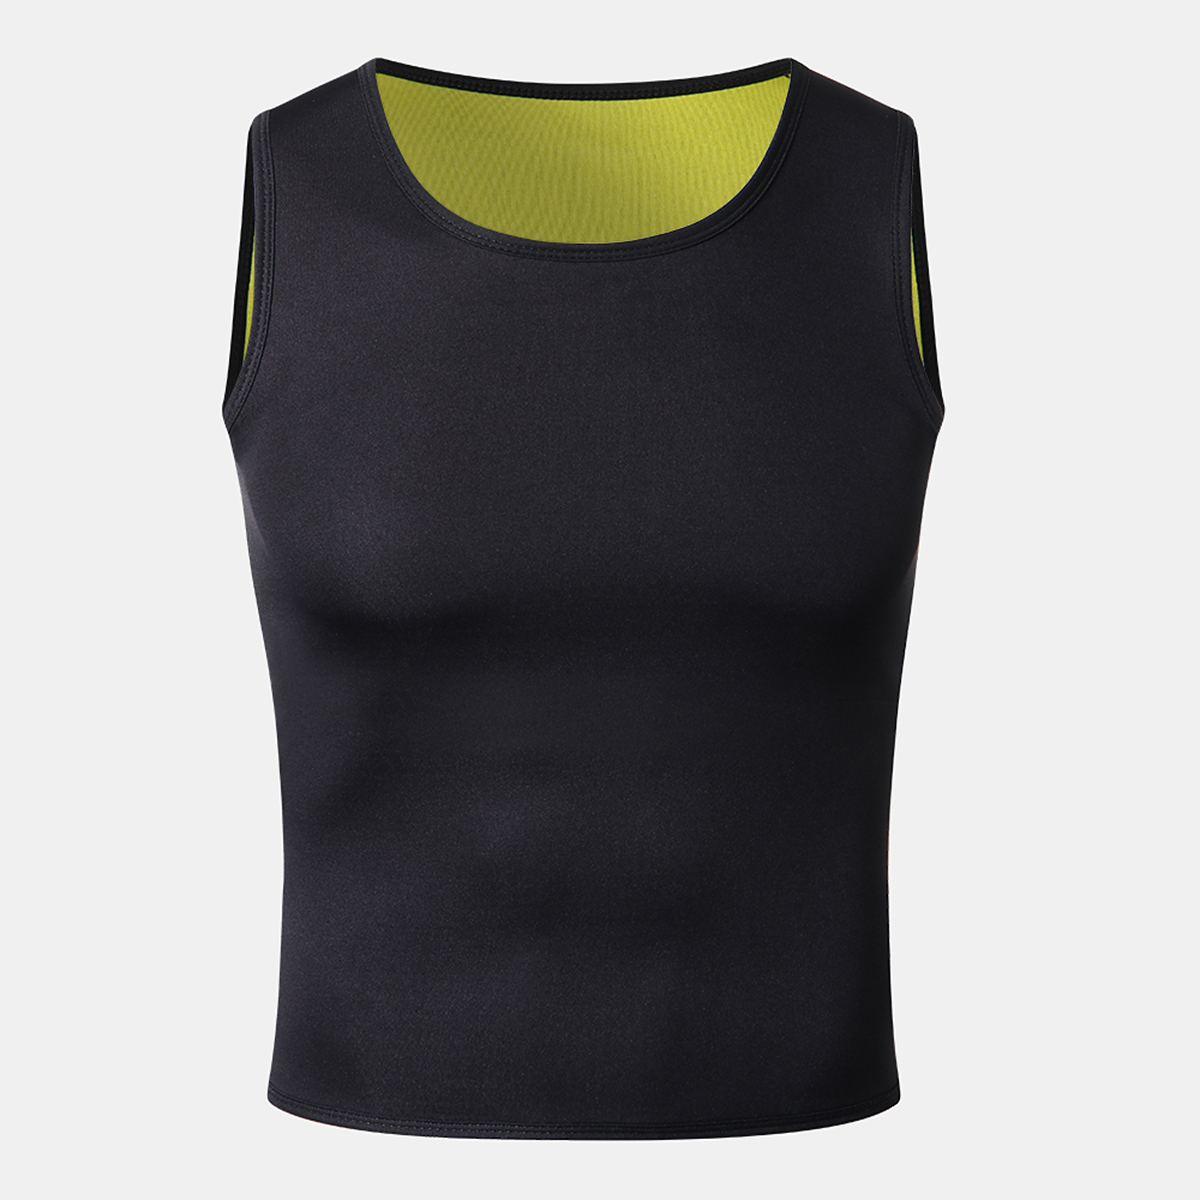 Neoprene-Body-Shaper-Slimming-Sweat-Trainer-Yoga-Gym-Cincher-Vest-Shapewear-Men-1464173-7